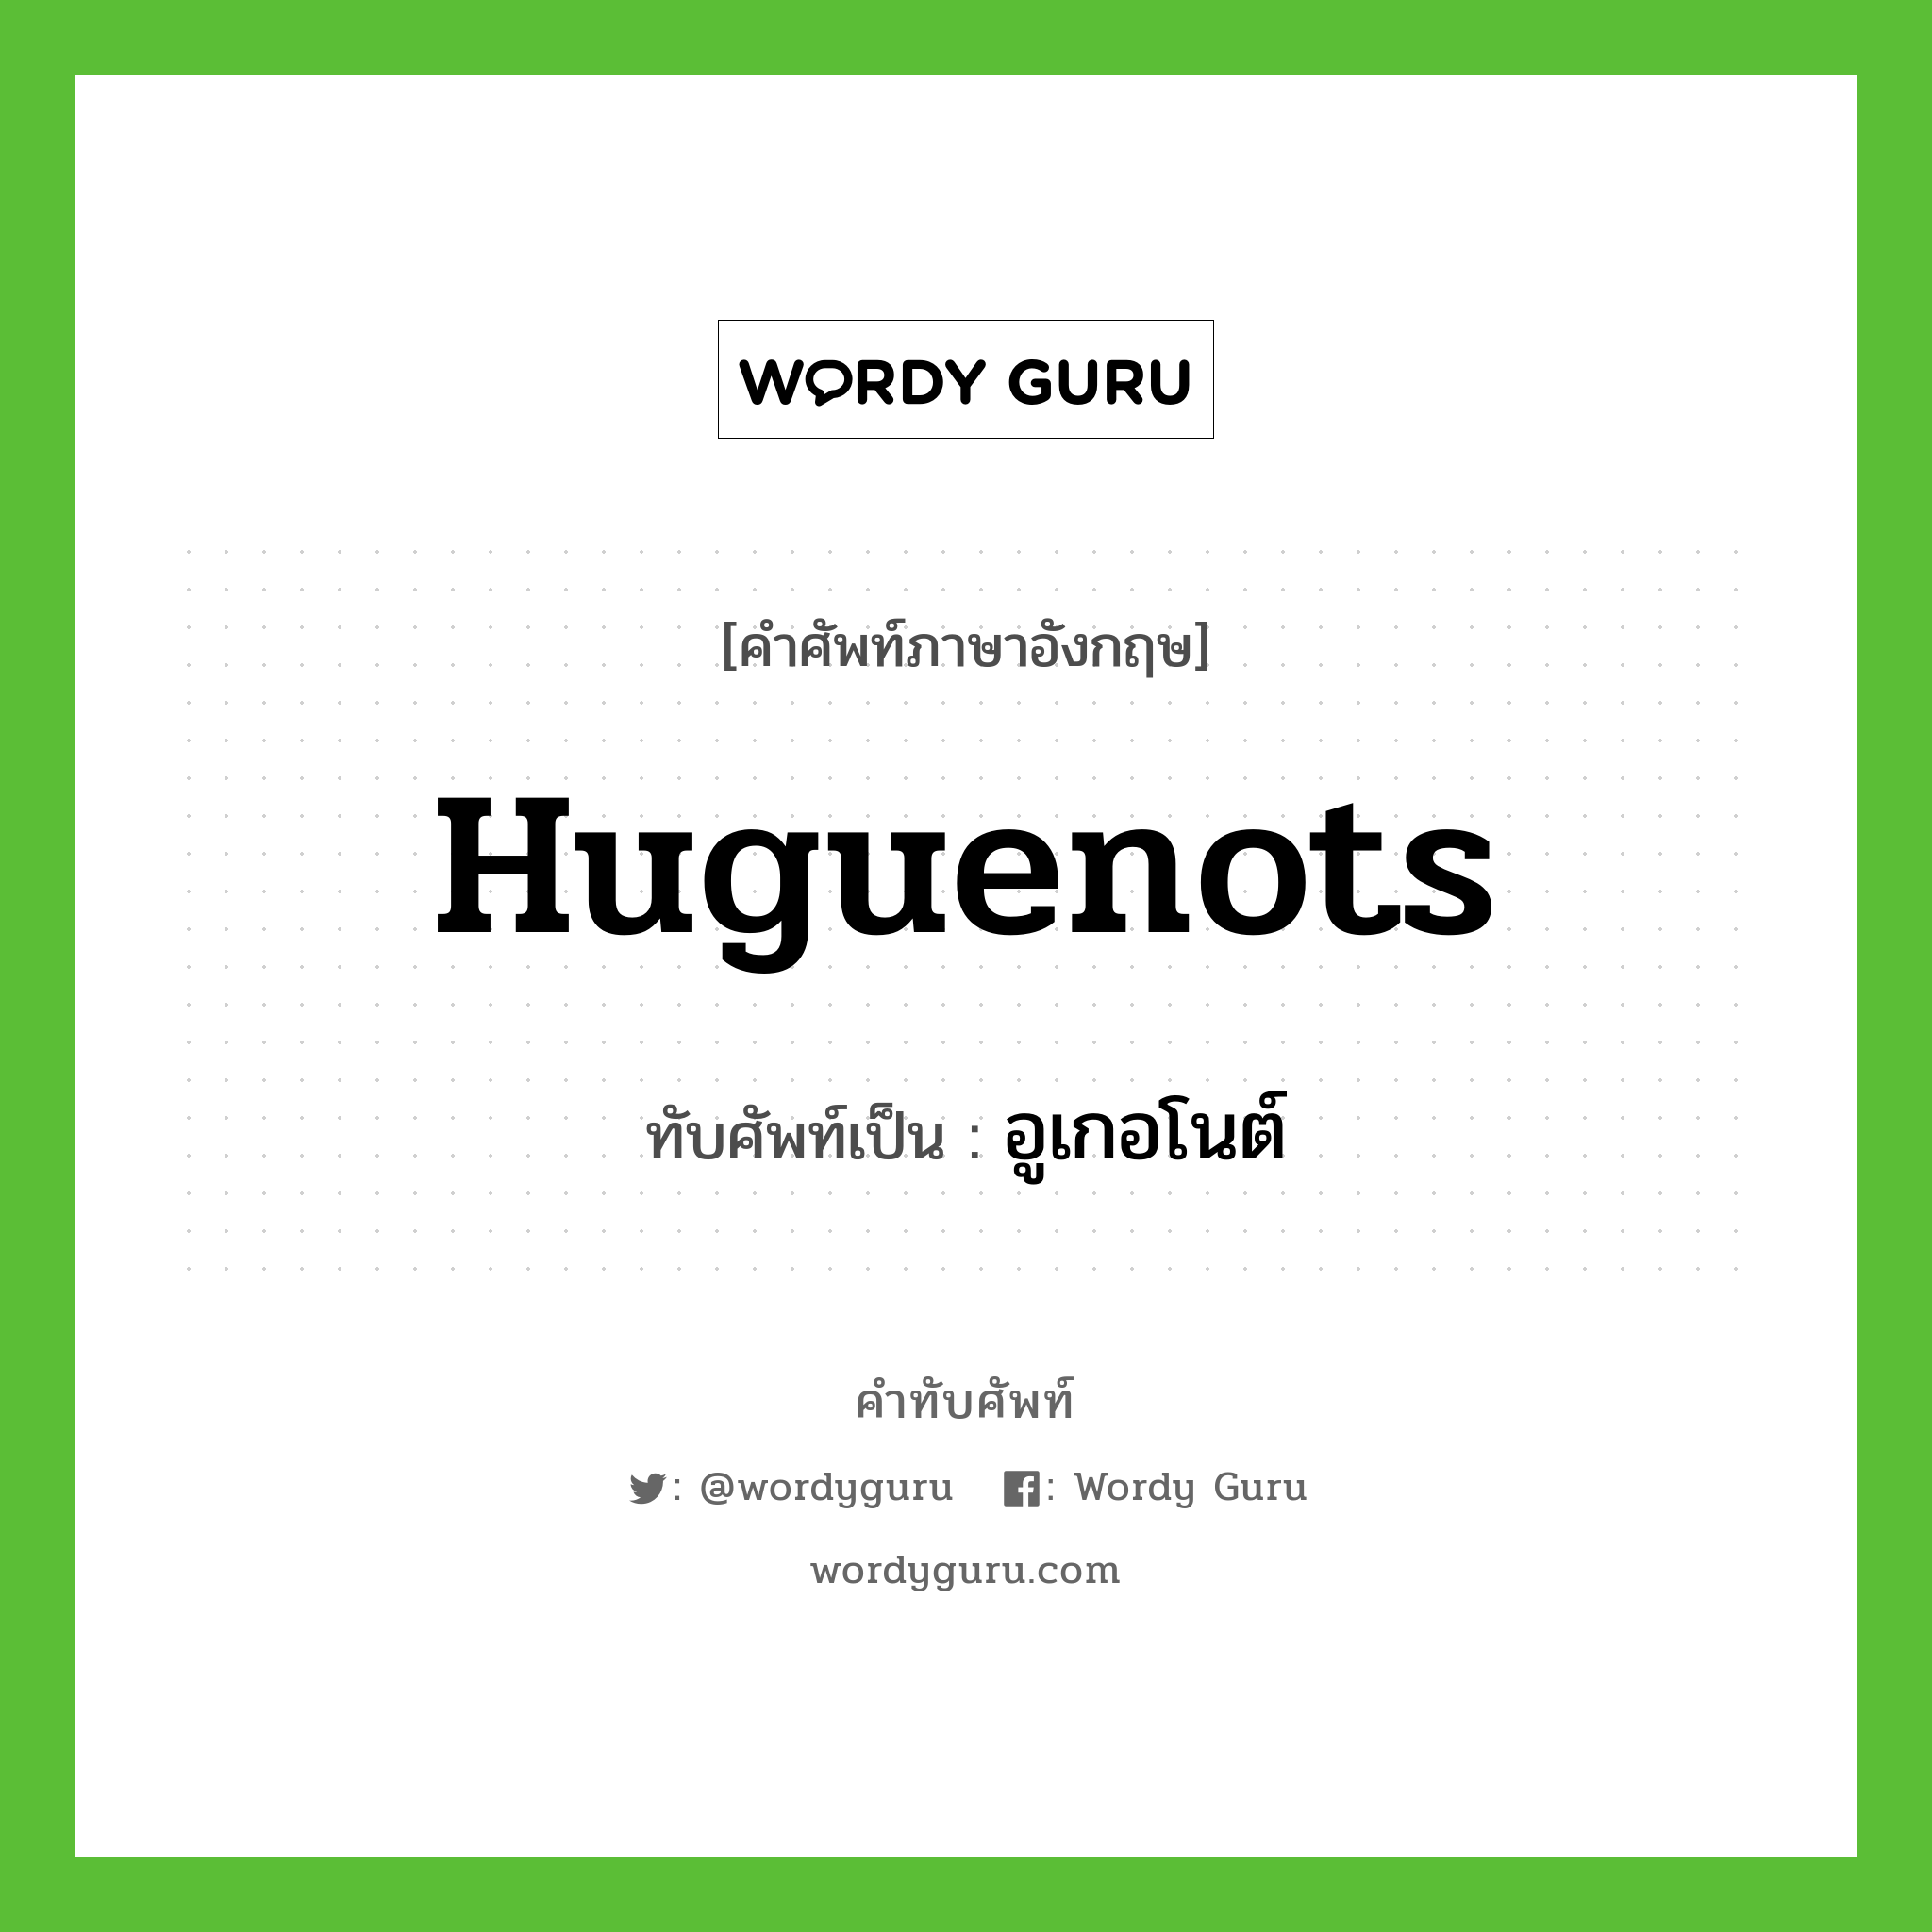 Huguenots เขียนเป็นคำไทยว่าอะไร?, คำศัพท์ภาษาอังกฤษ Huguenots ทับศัพท์เป็น อูเกอโนต์